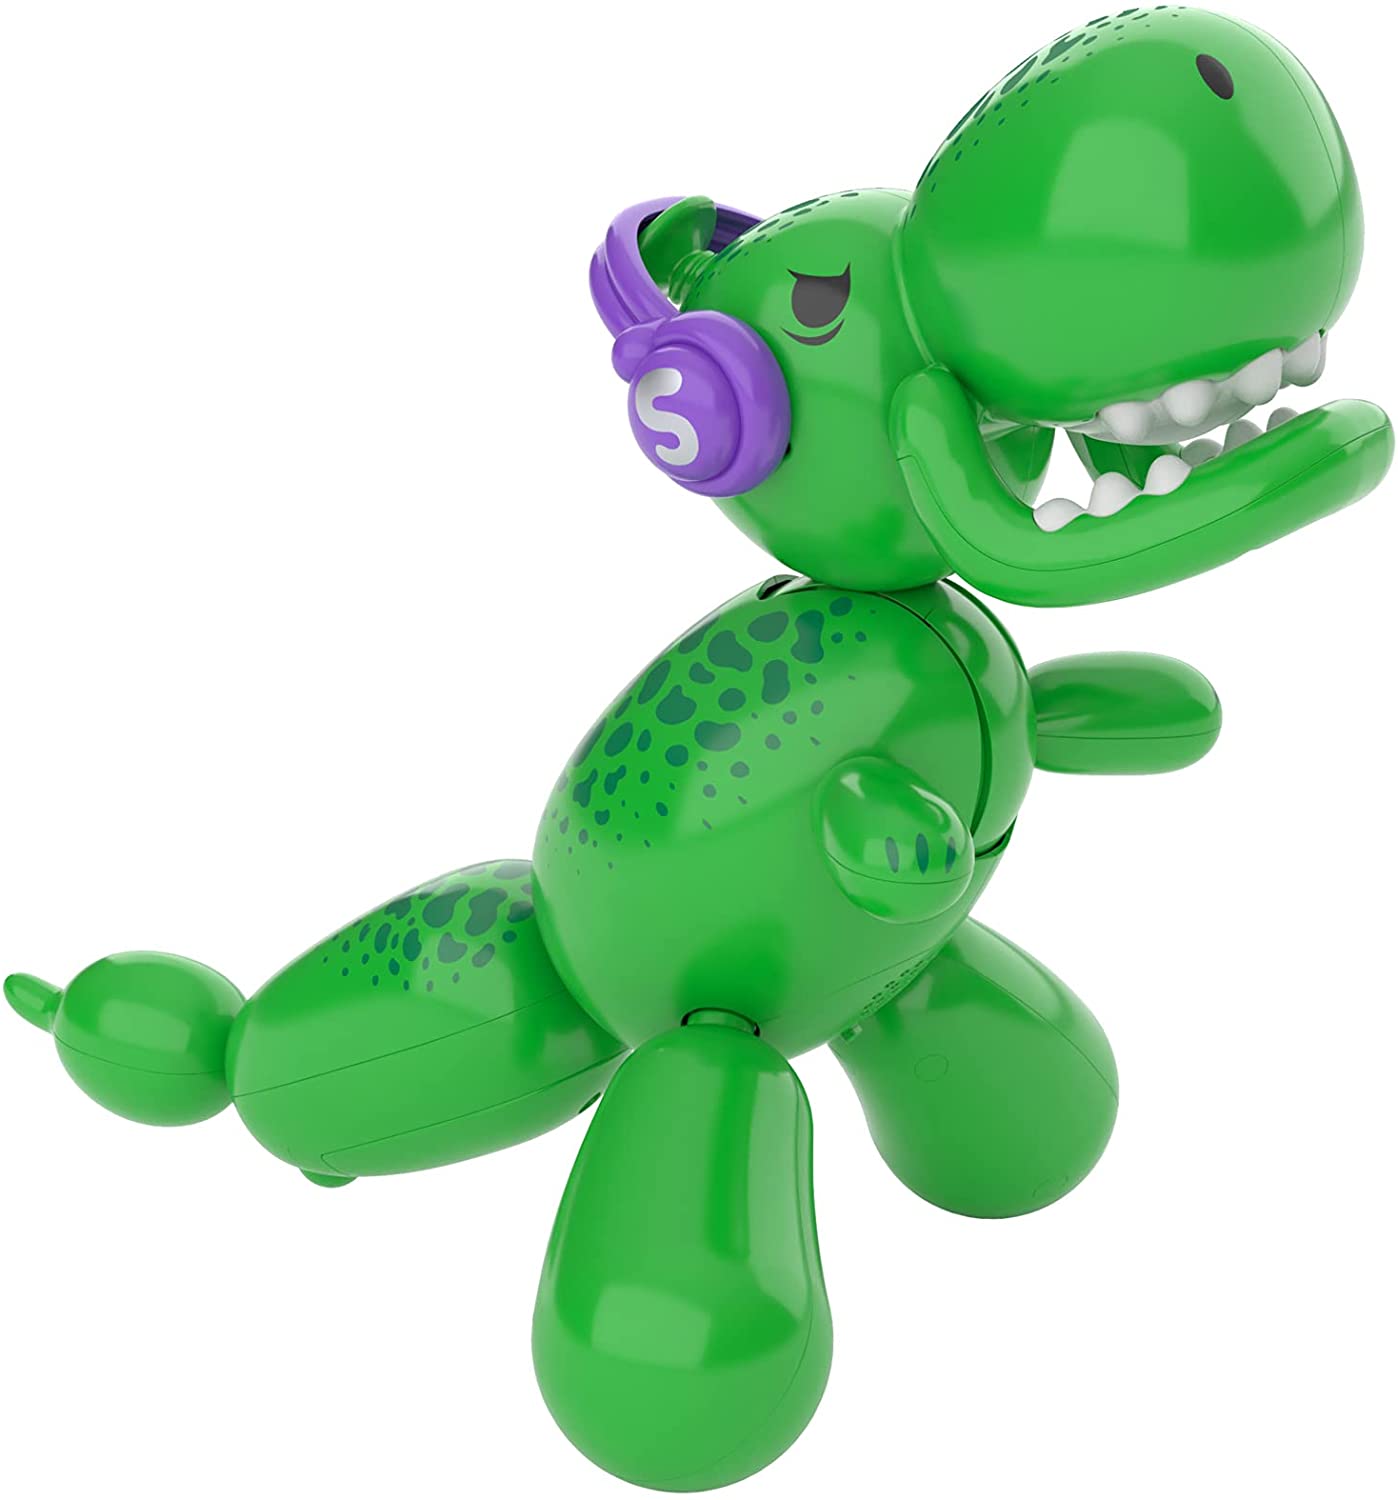 Robot Squeakee the Ballon Dino - Albagame